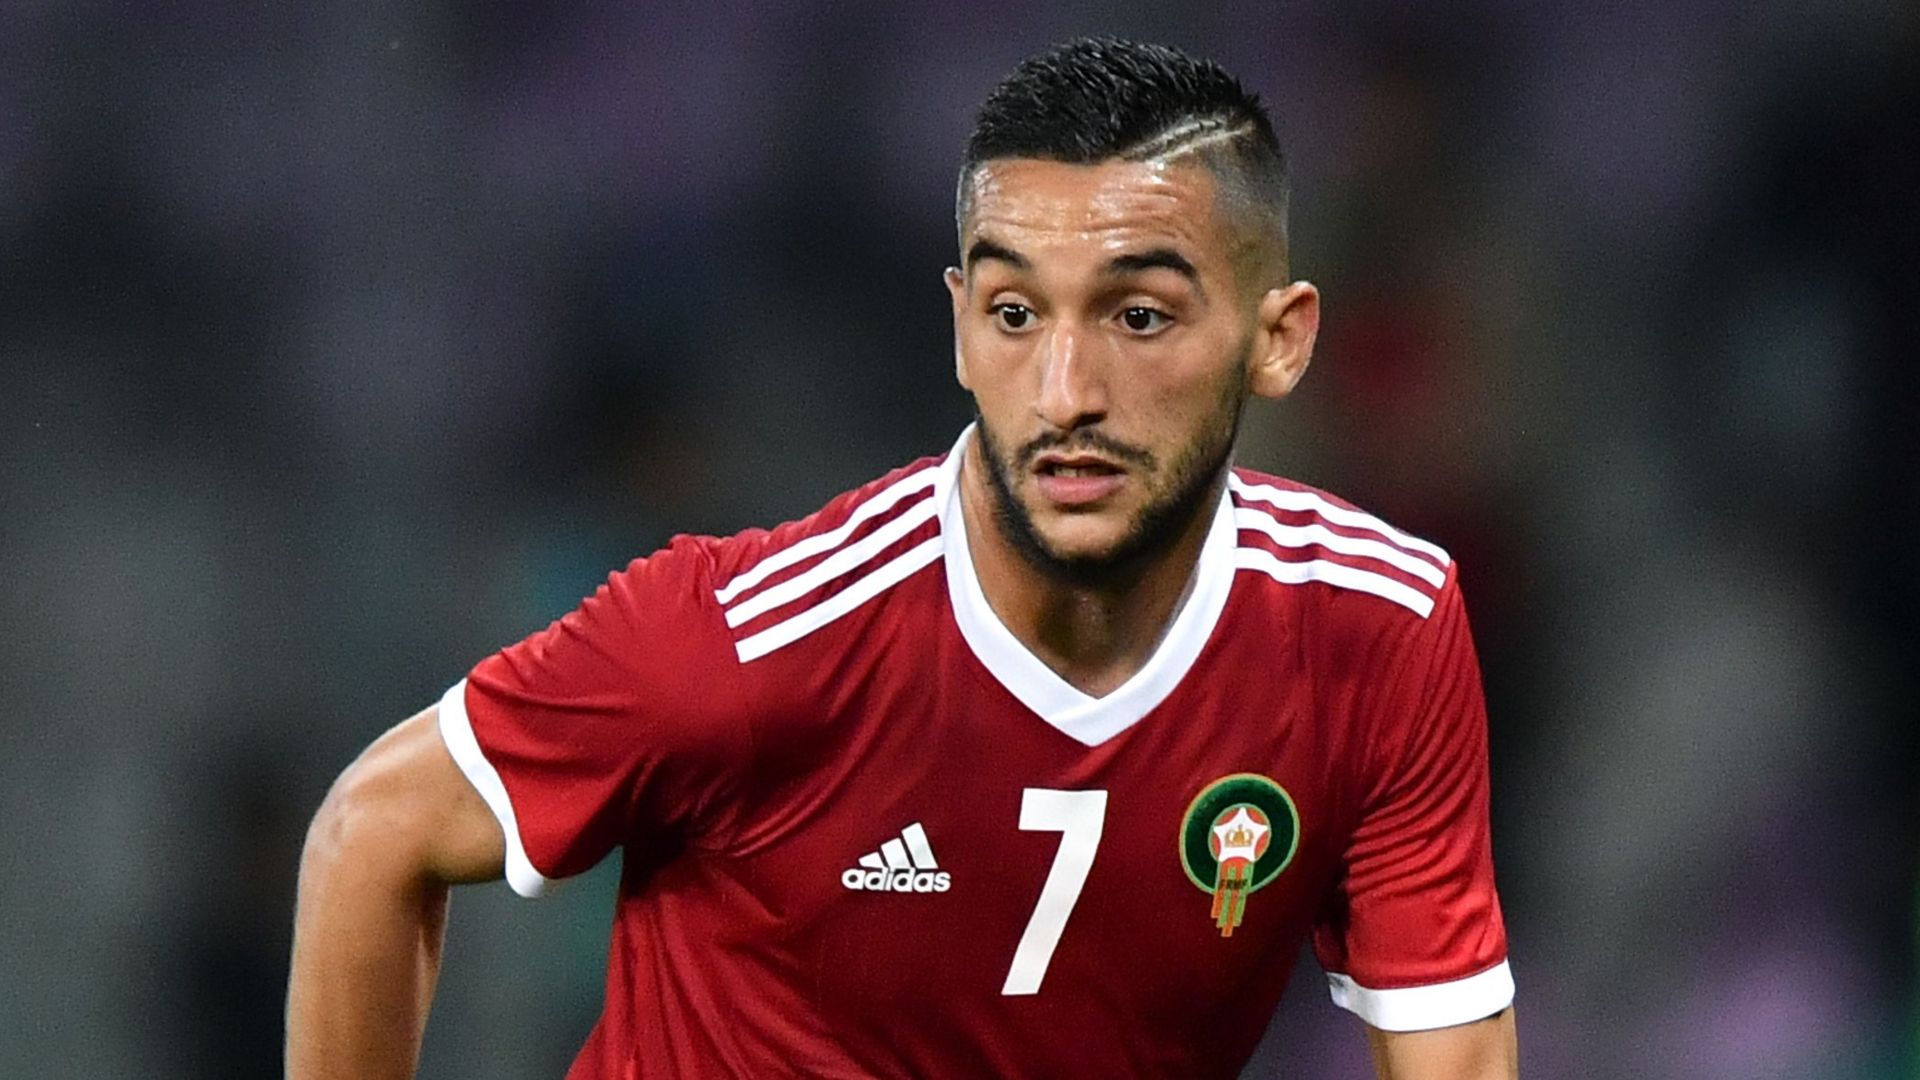 Marrocos: Ziyech - Meia-atacante (17 gols em 40 jogos entre 2015 e 2021) / Um dos grandes nomes do futebol europeu, mas que não deve mais ser convocado pelo técnico Vahid Halilhodzic, que o cortou do time por maus comportamentos.